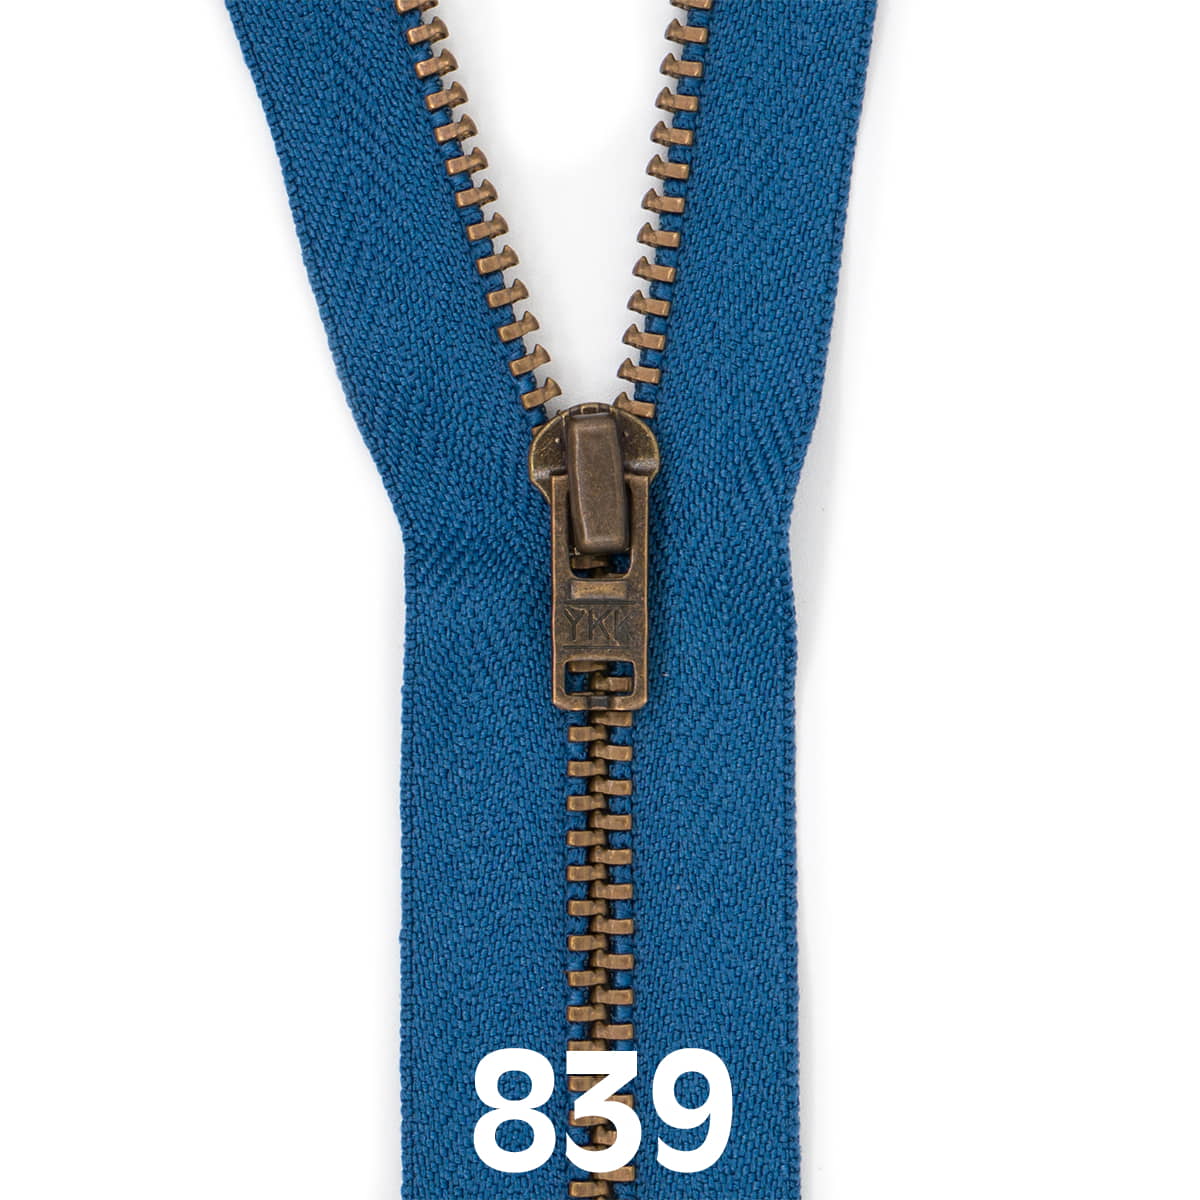 Broek rits metaal | brons fijn | 15 cm | YKK | 839 jeans blauw Rits RITS-BROEK-BRONZE-4.5-15CM-839-JEAN-BLUE - Fourniturenkraam.nl